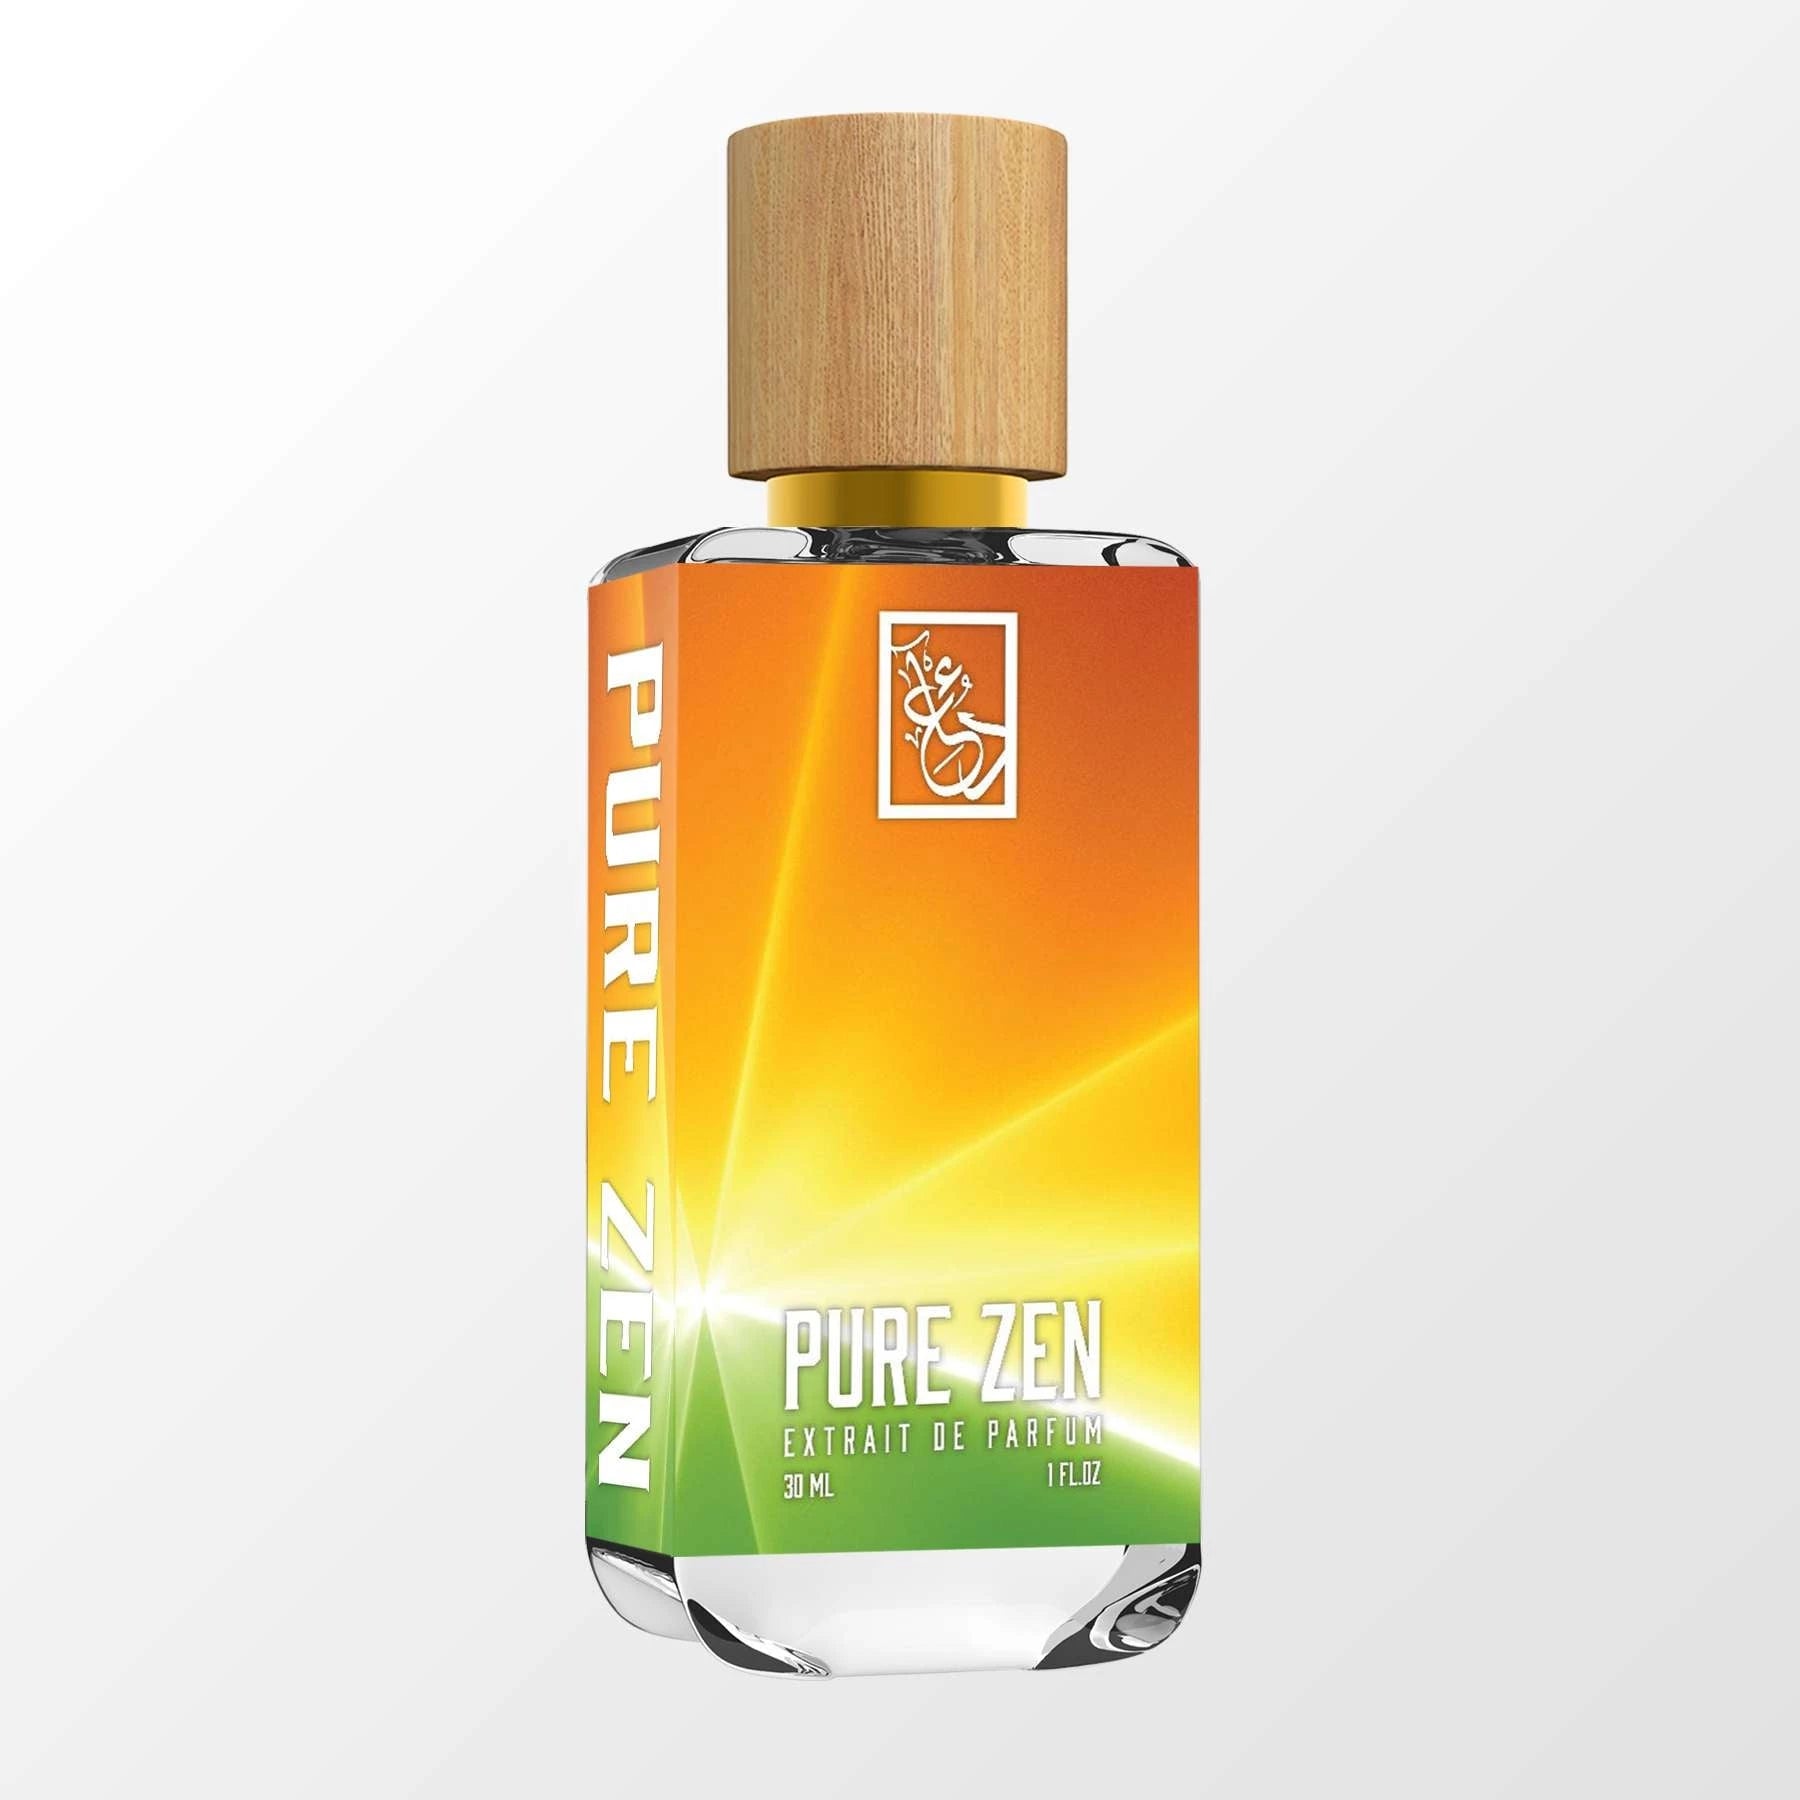 Louis Vuitton - Cactus Garden - Oil Perfumery